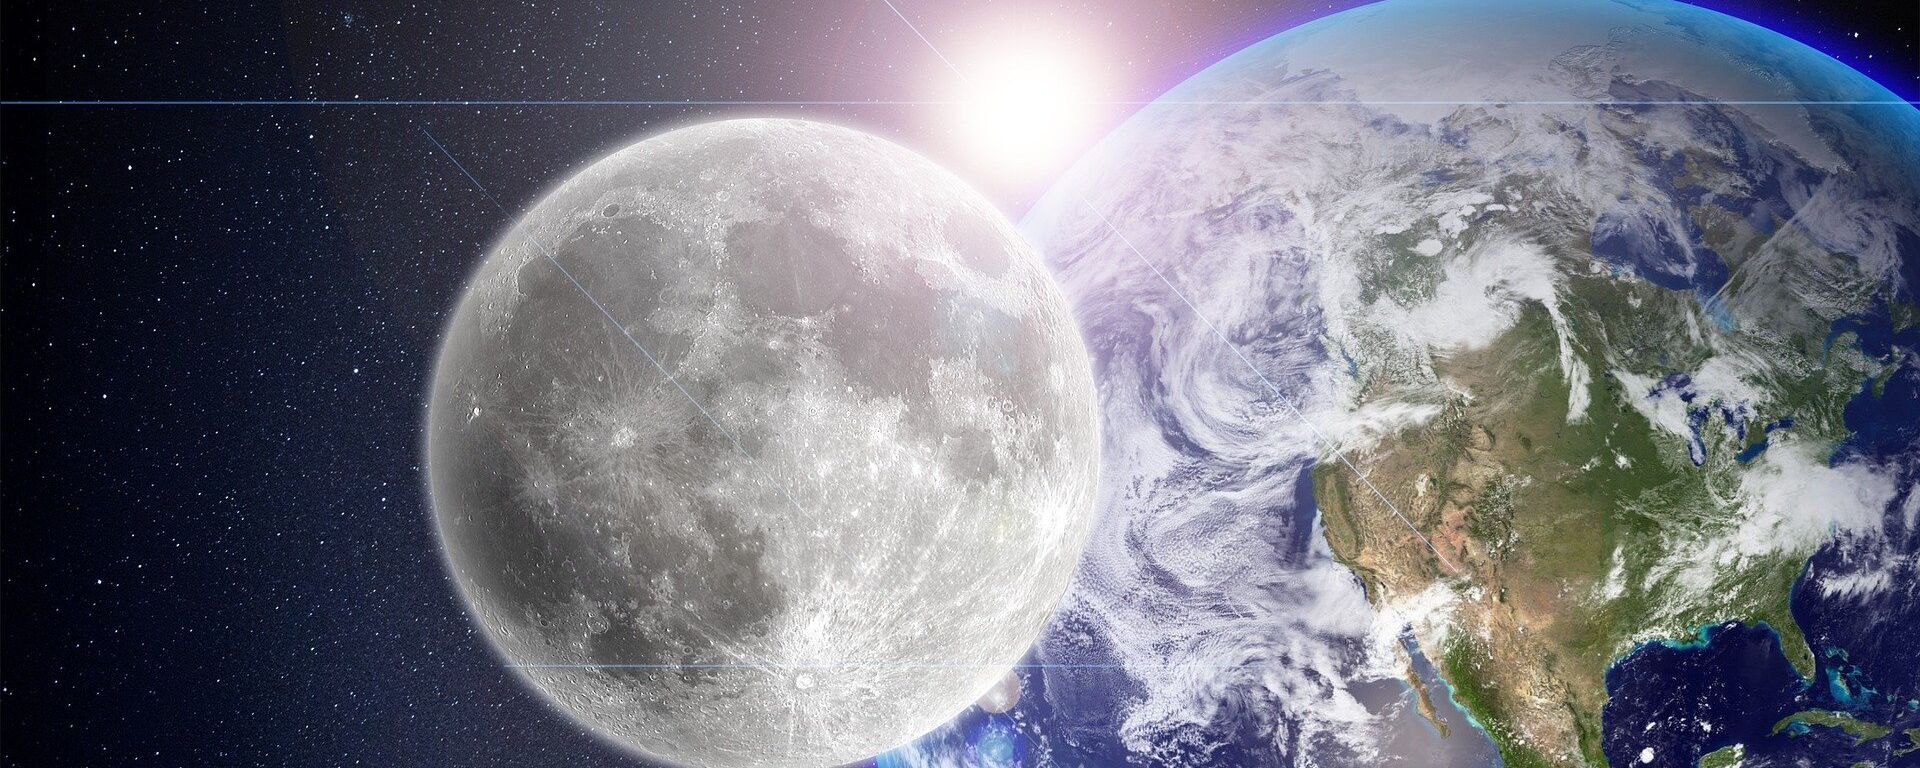 La Luna, la Tierra y el Sol (imagen referencial) - Sputnik Mundo, 1920, 28.01.2021